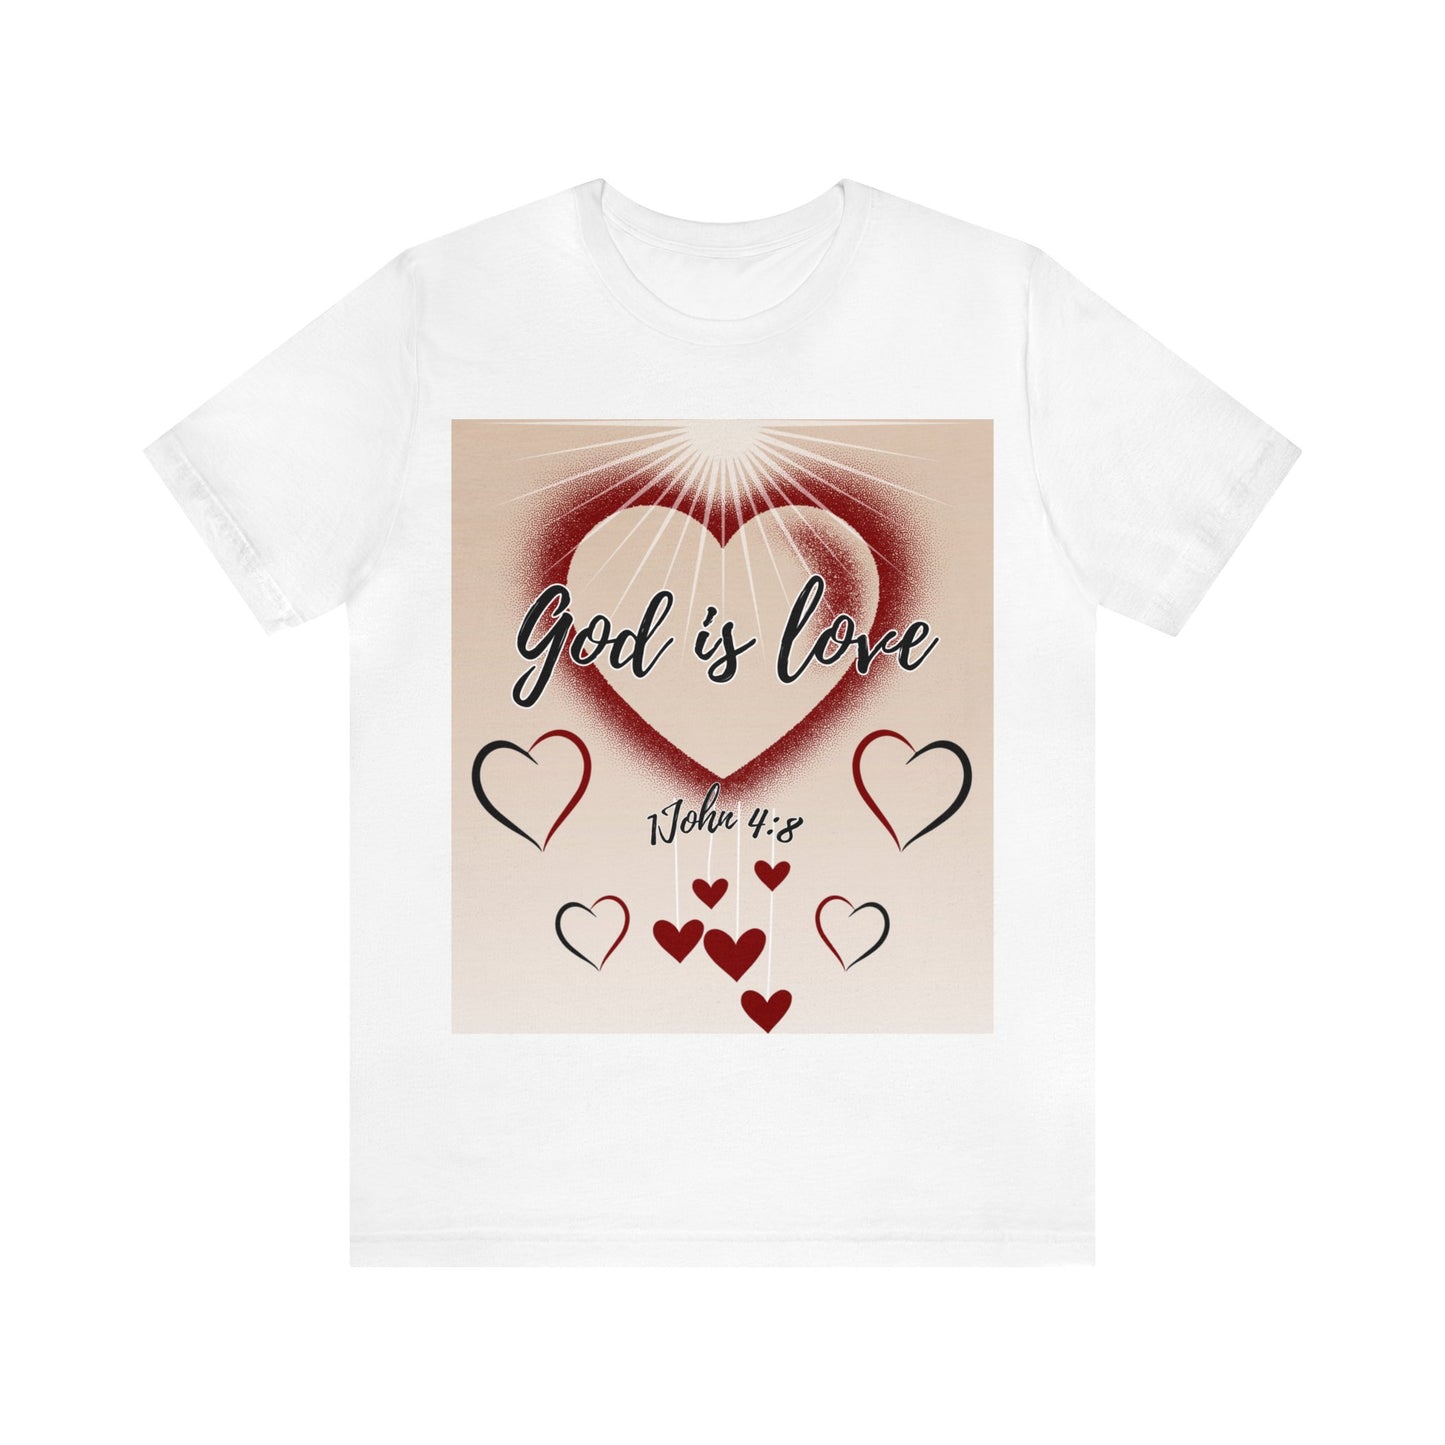 God Is Love! Women's T-Shirt (Unisex Fit)